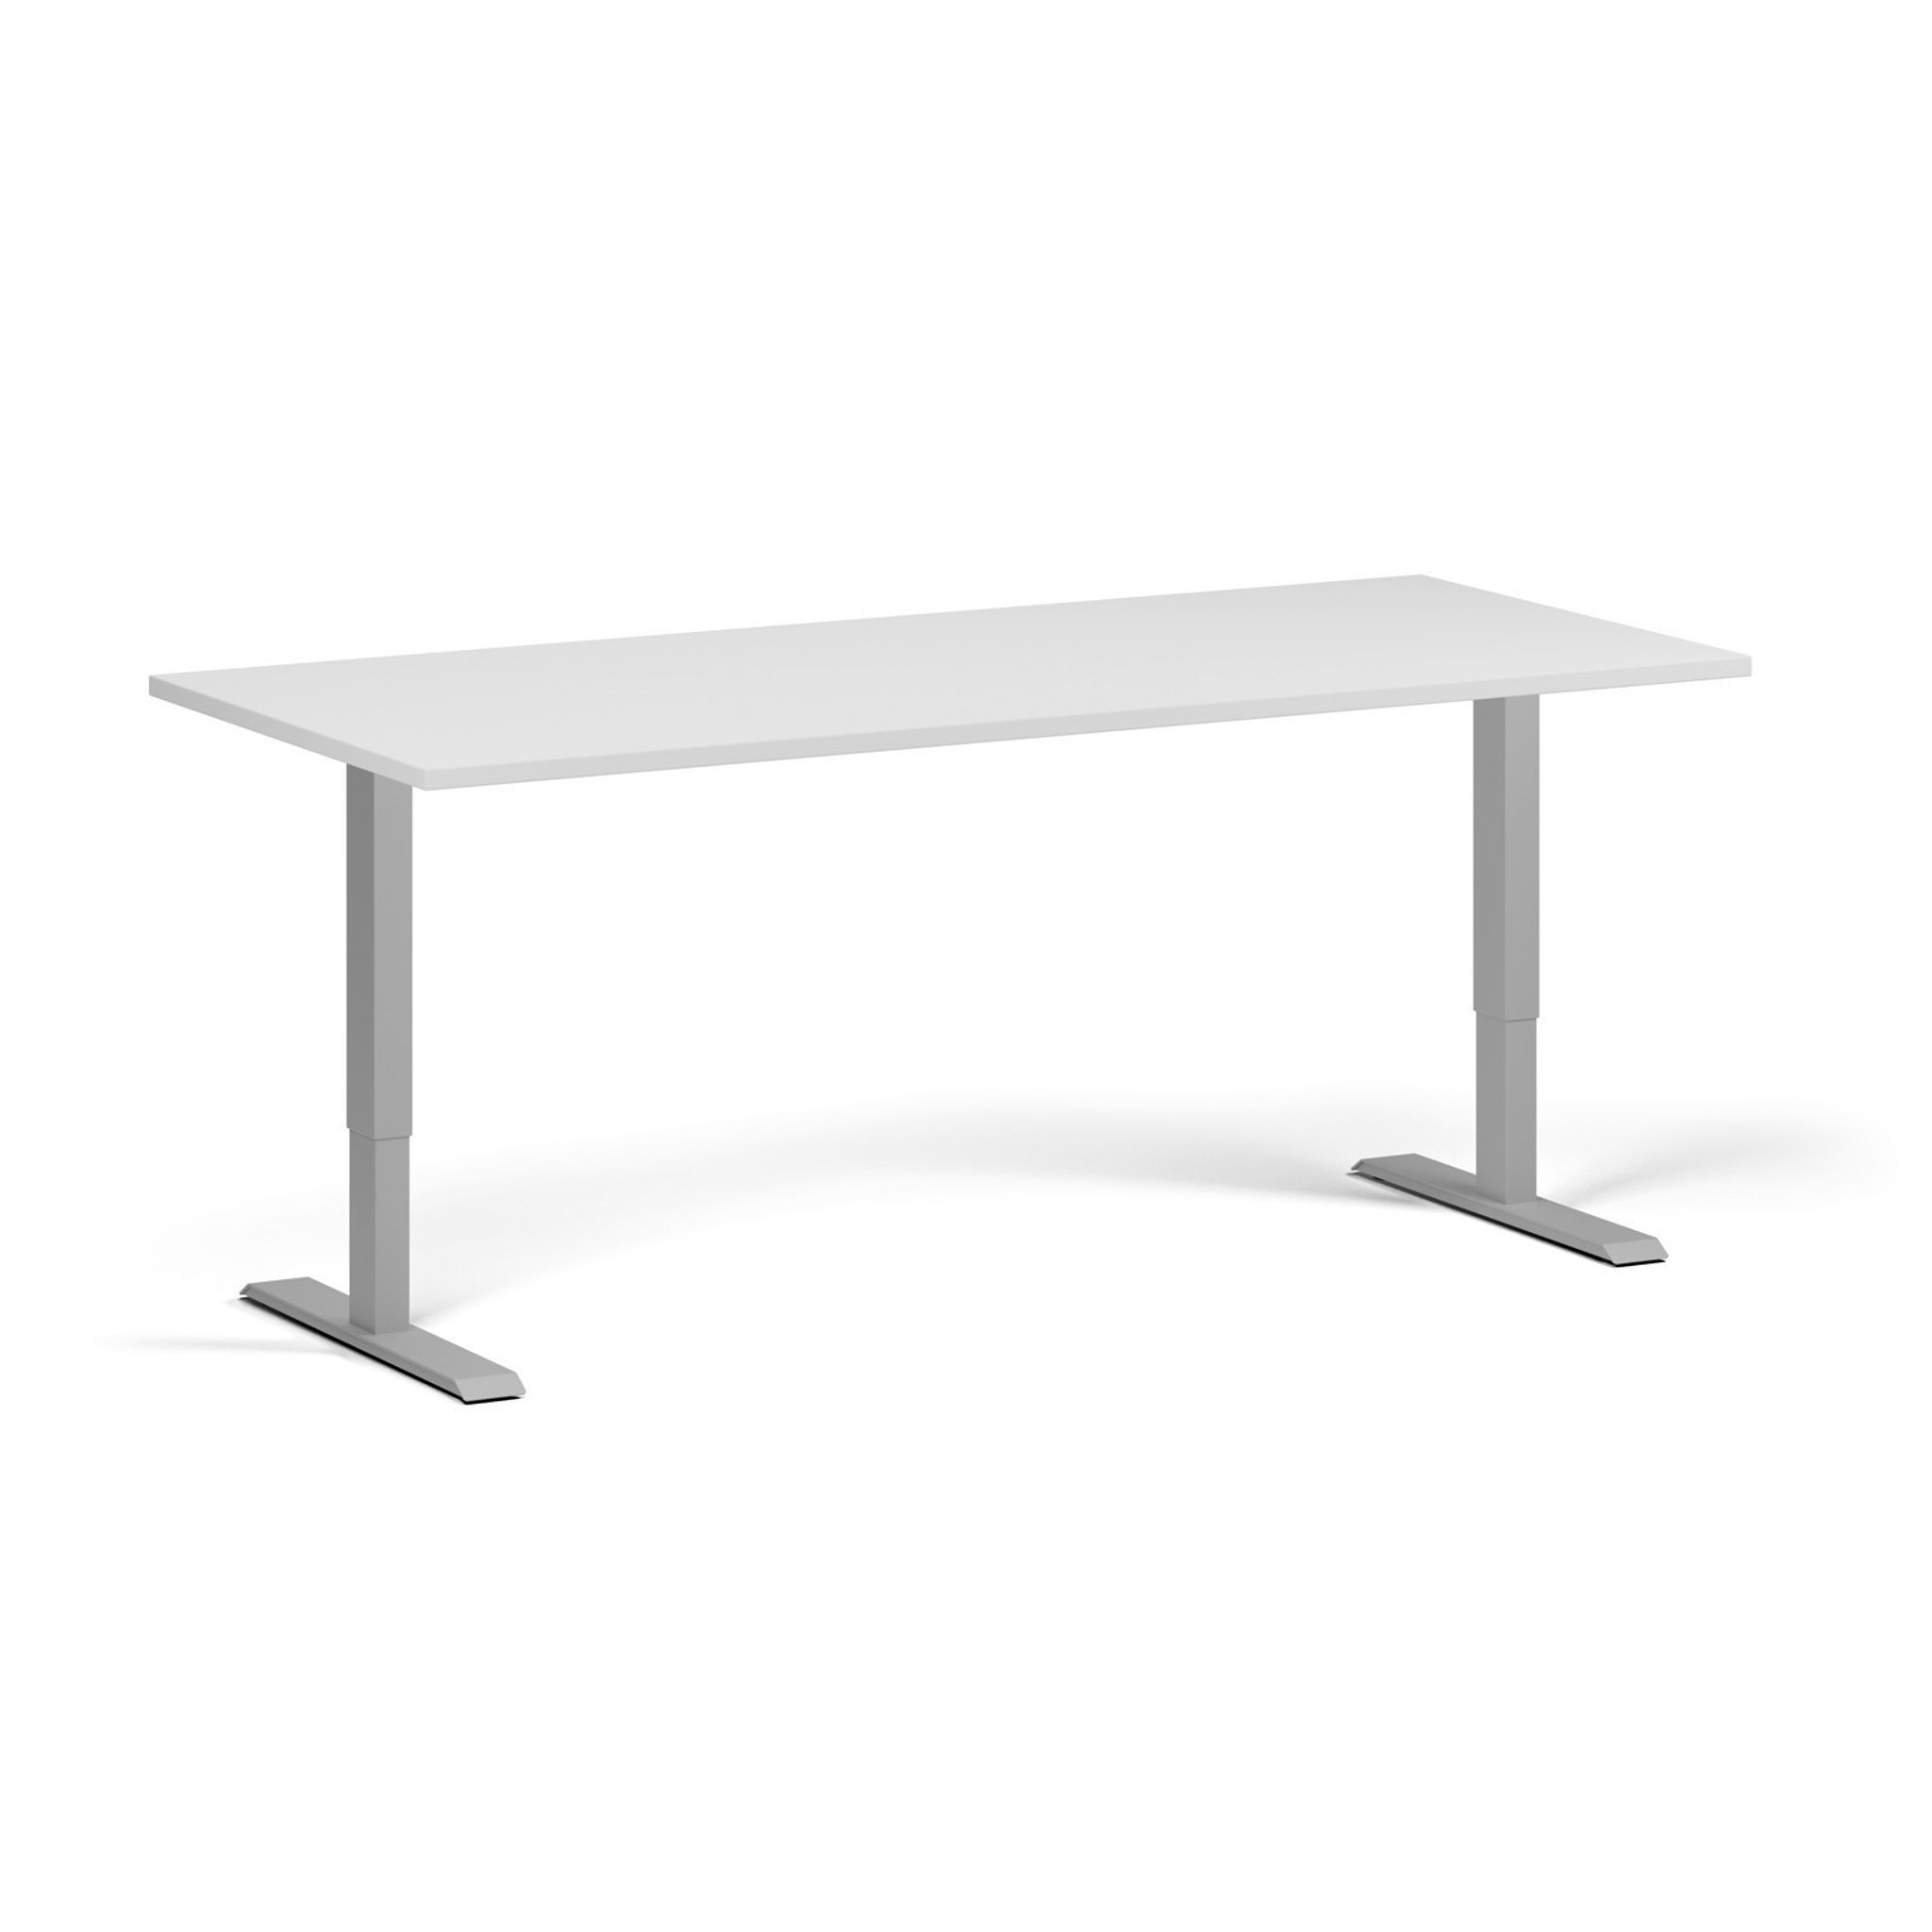 Výškově nastavitelný stůl, 1 motor, 745 - 1235 mm, deska 1800 x 800 mm, šedá podnož, bílá